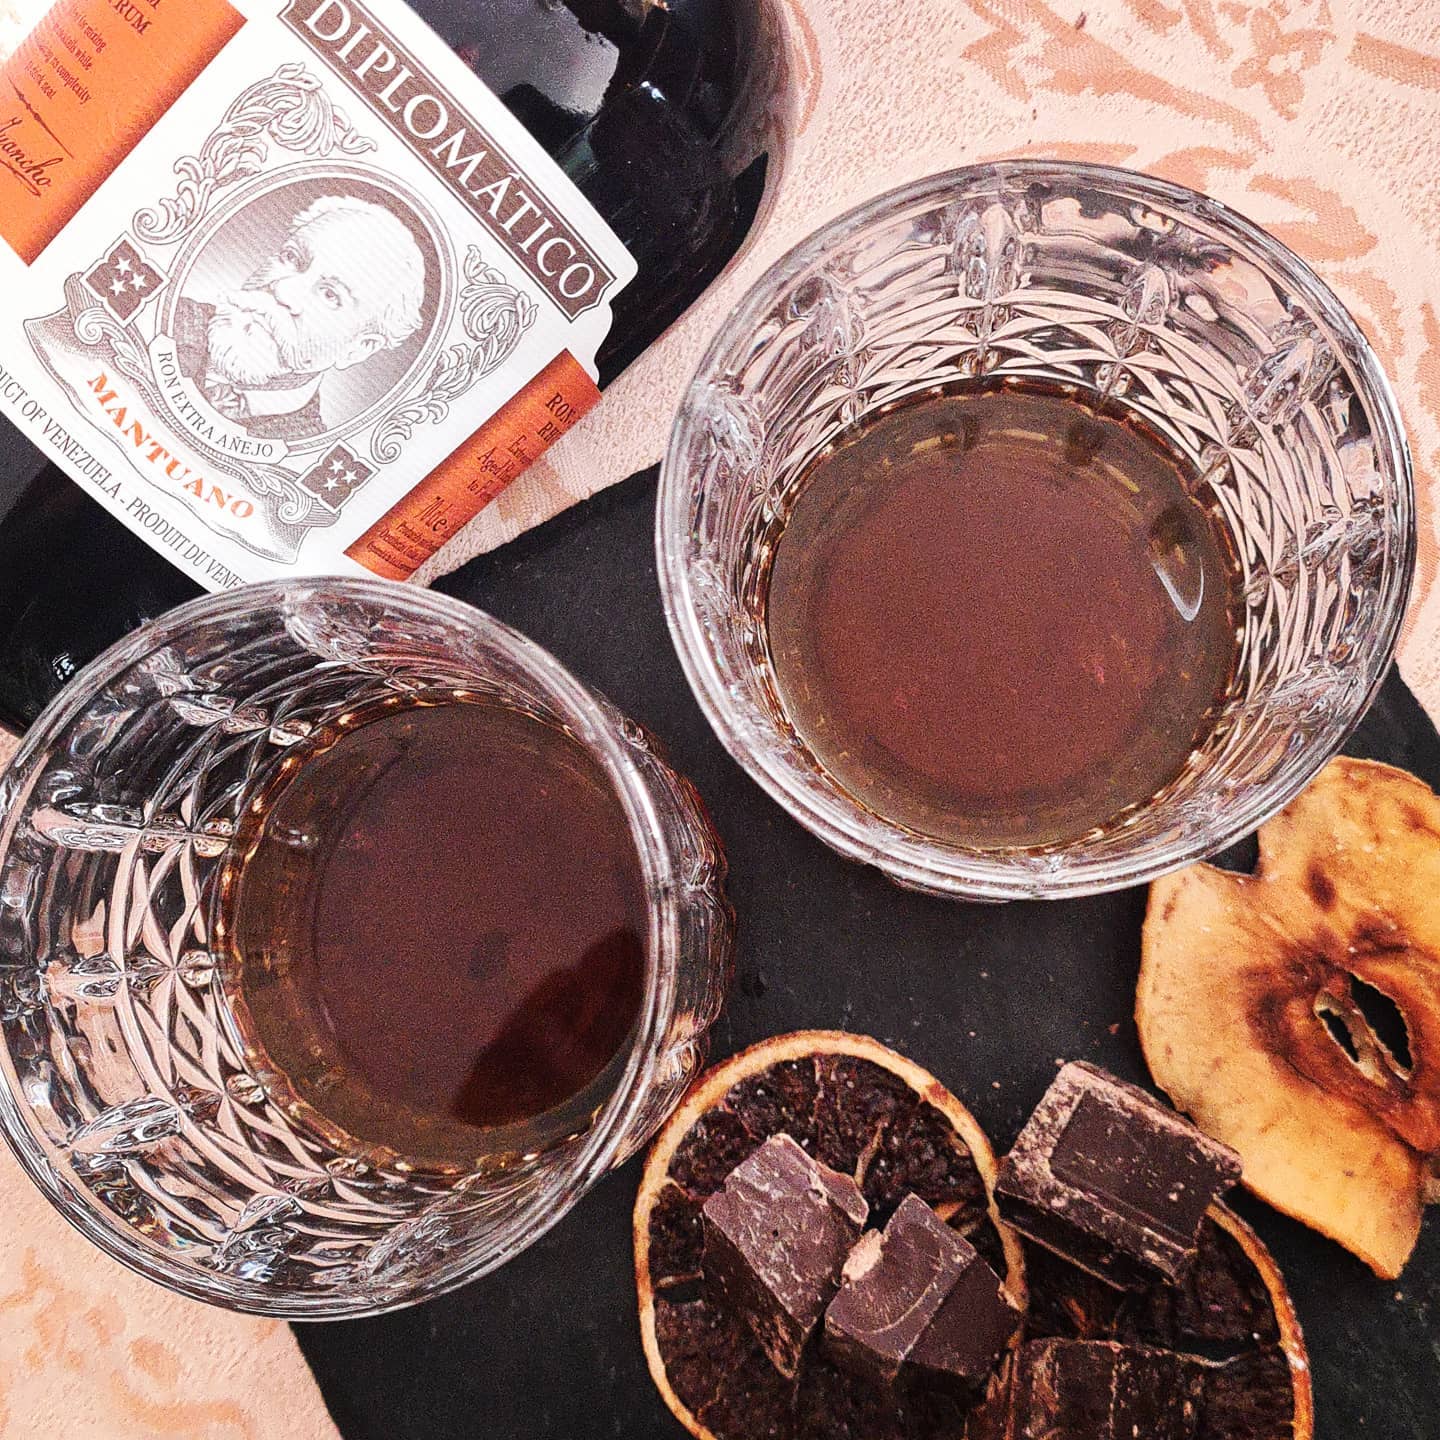 cioccolato-rum-sigari-cubani-ristorante-la-maison4-min